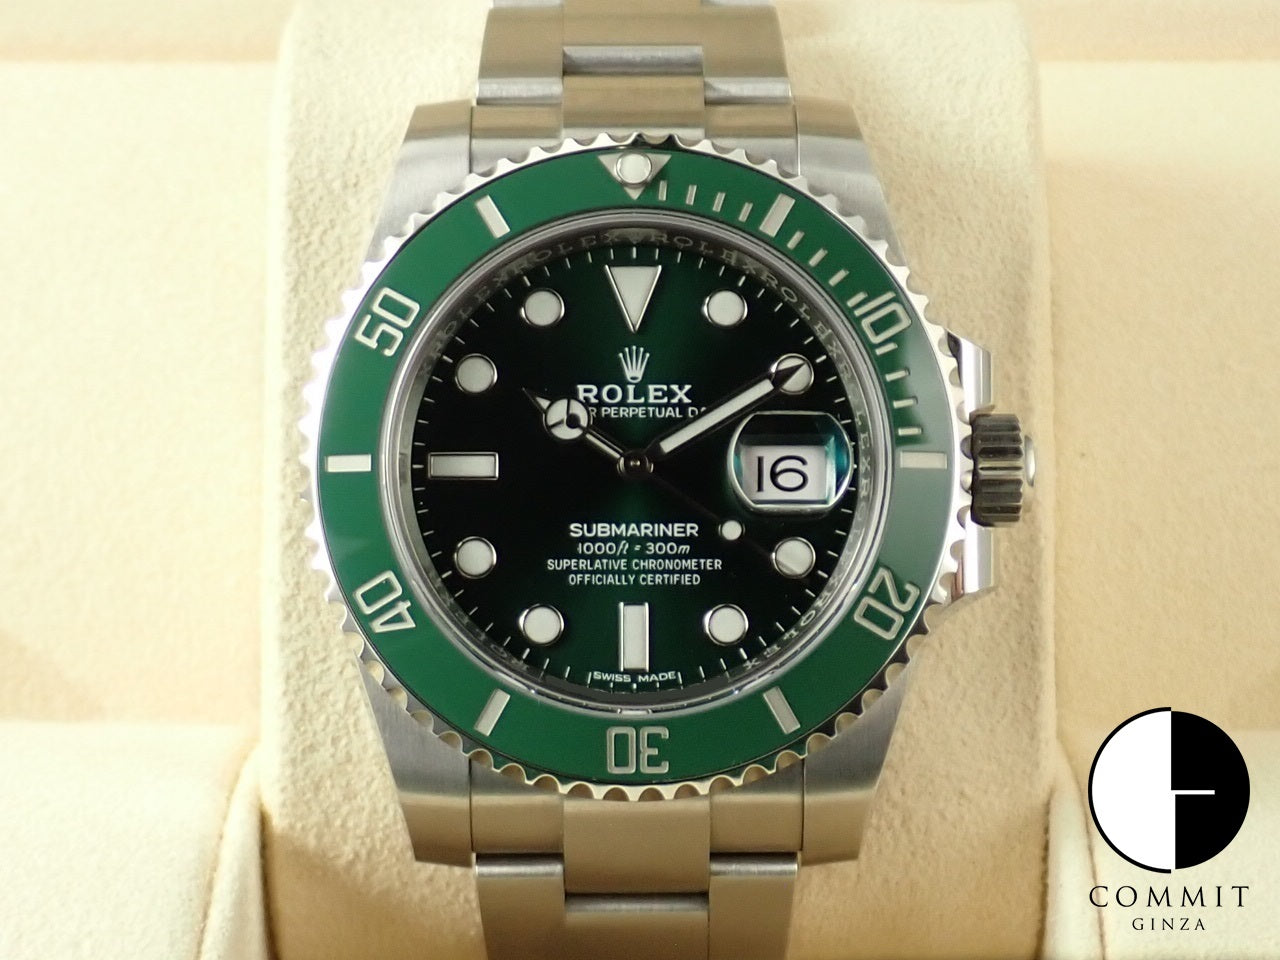 Rolex Submariner Green [Excellent condition] &lt;Warranty, box, etc.&gt;